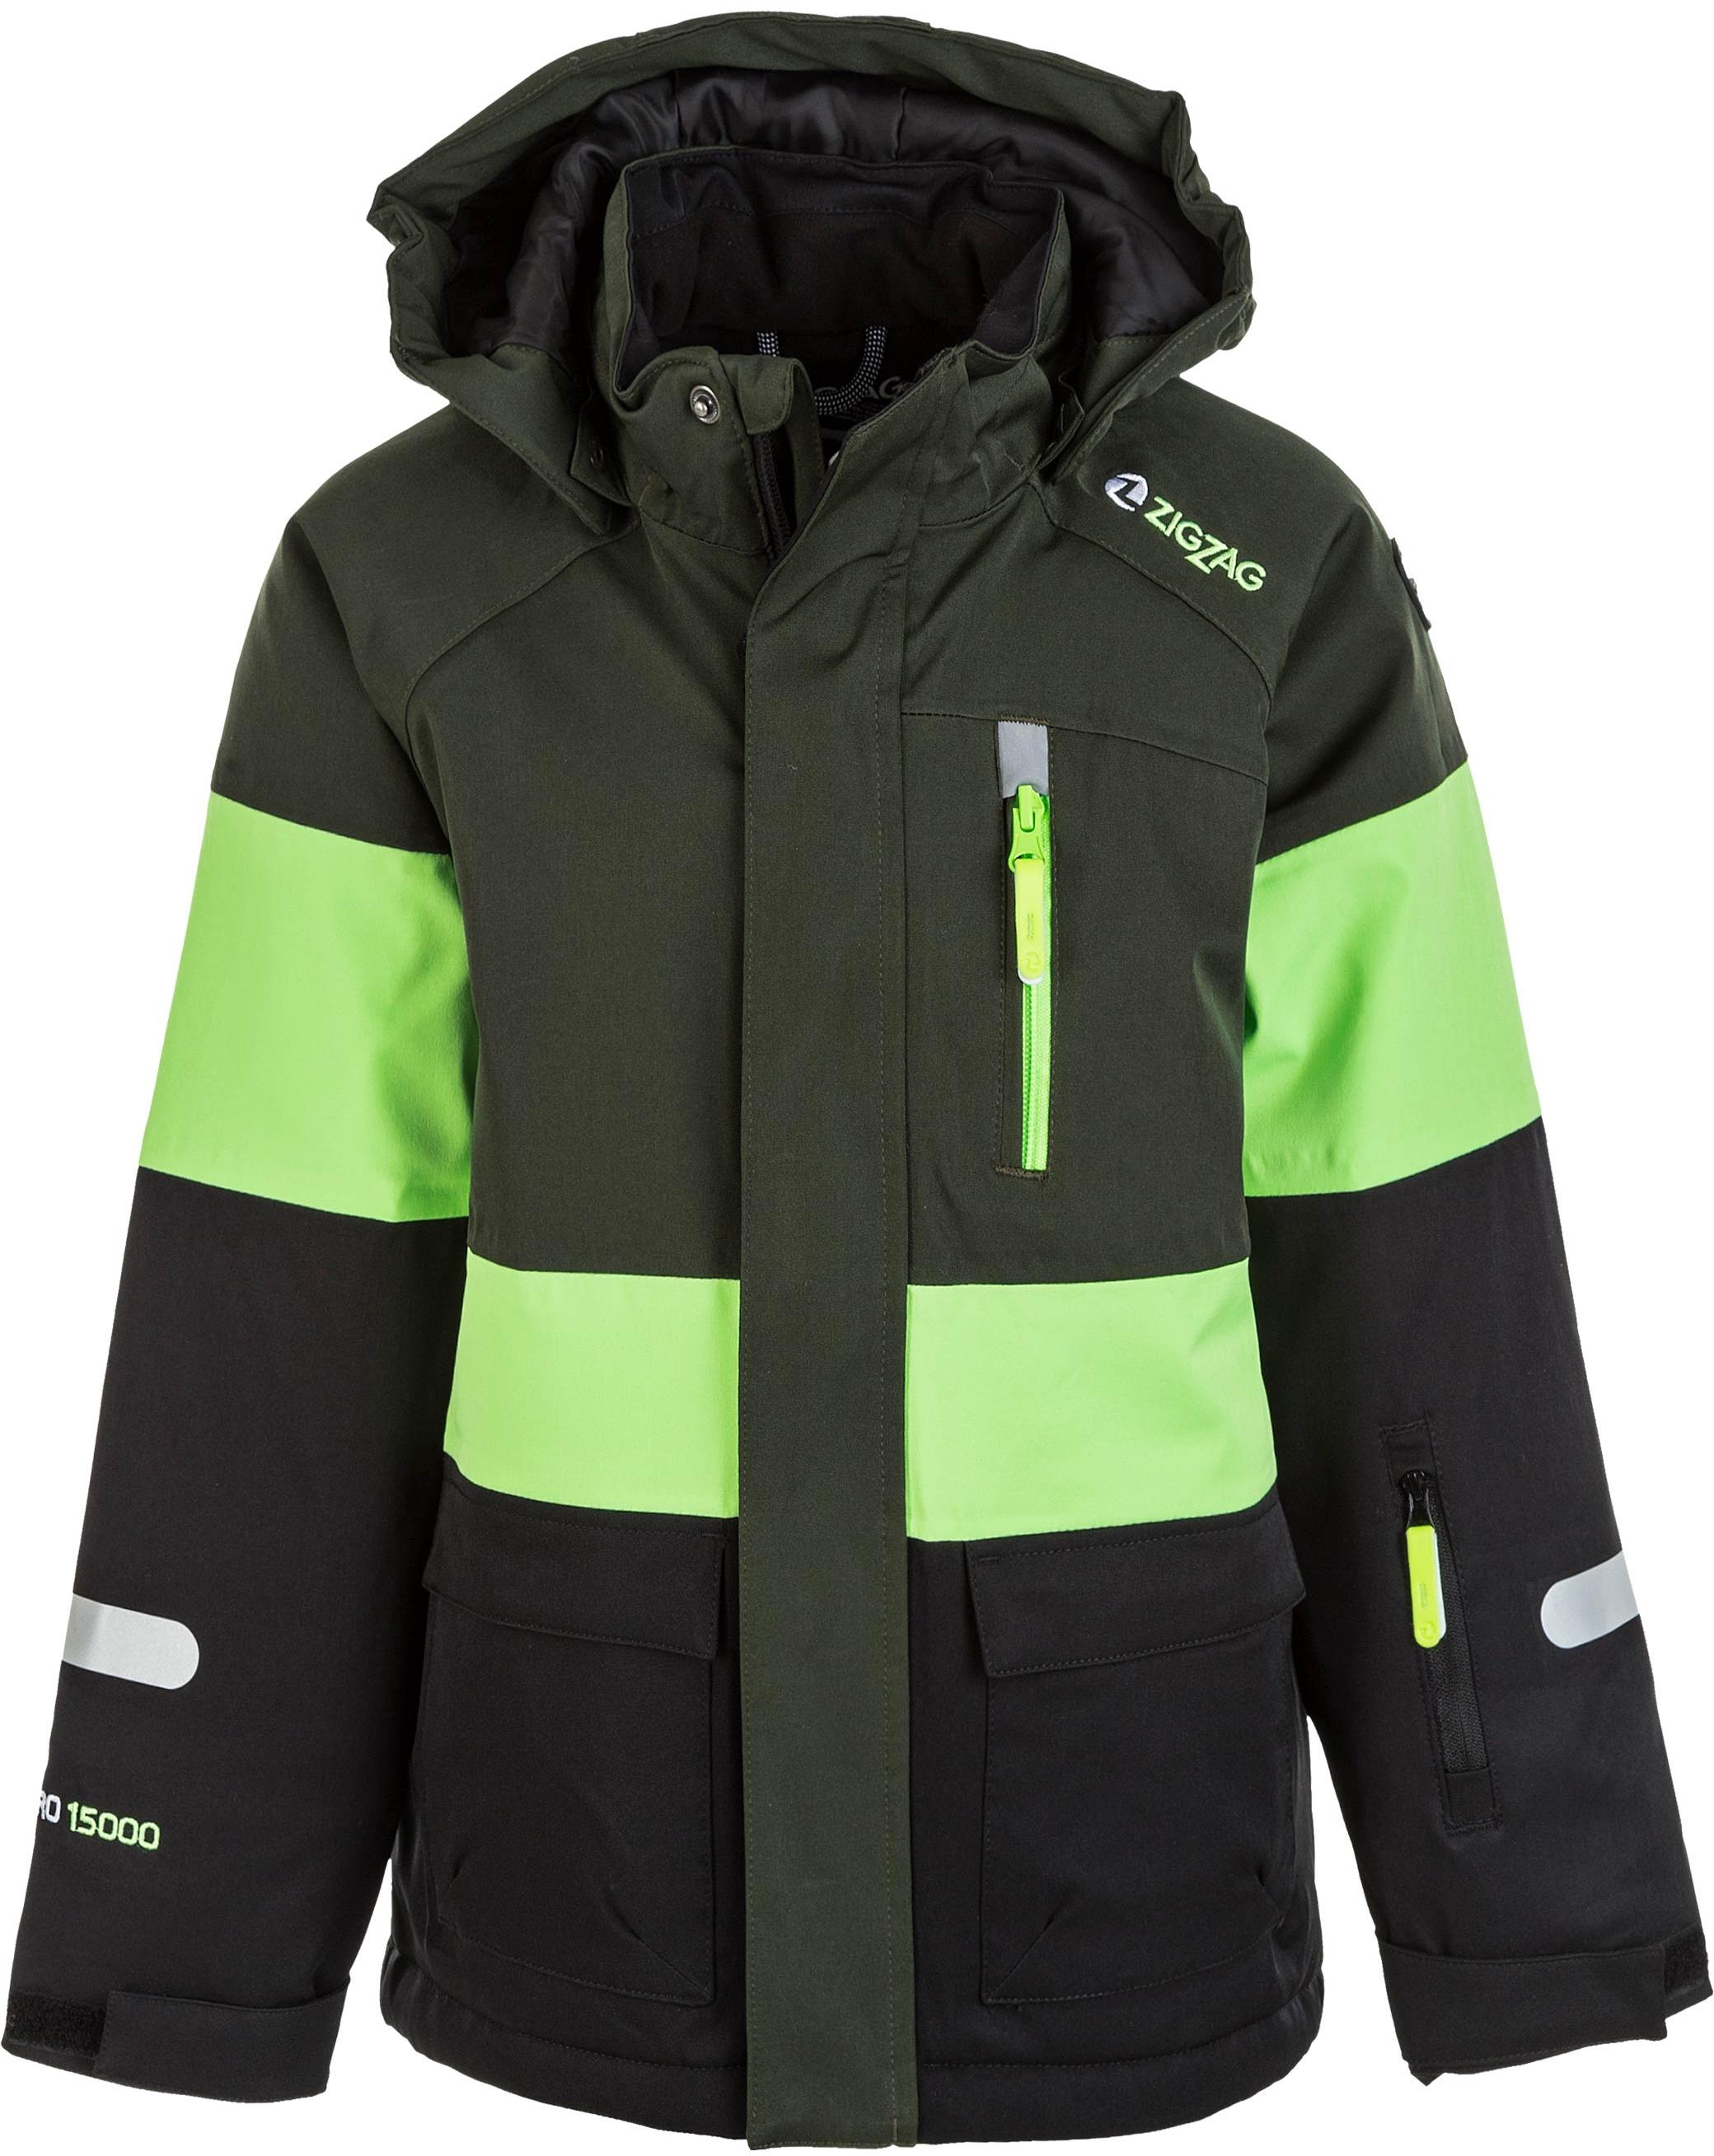 Duffel Shop ZigZag Online SportScheck von Bag Taylora kaufen im Skijacke Kinder 3006